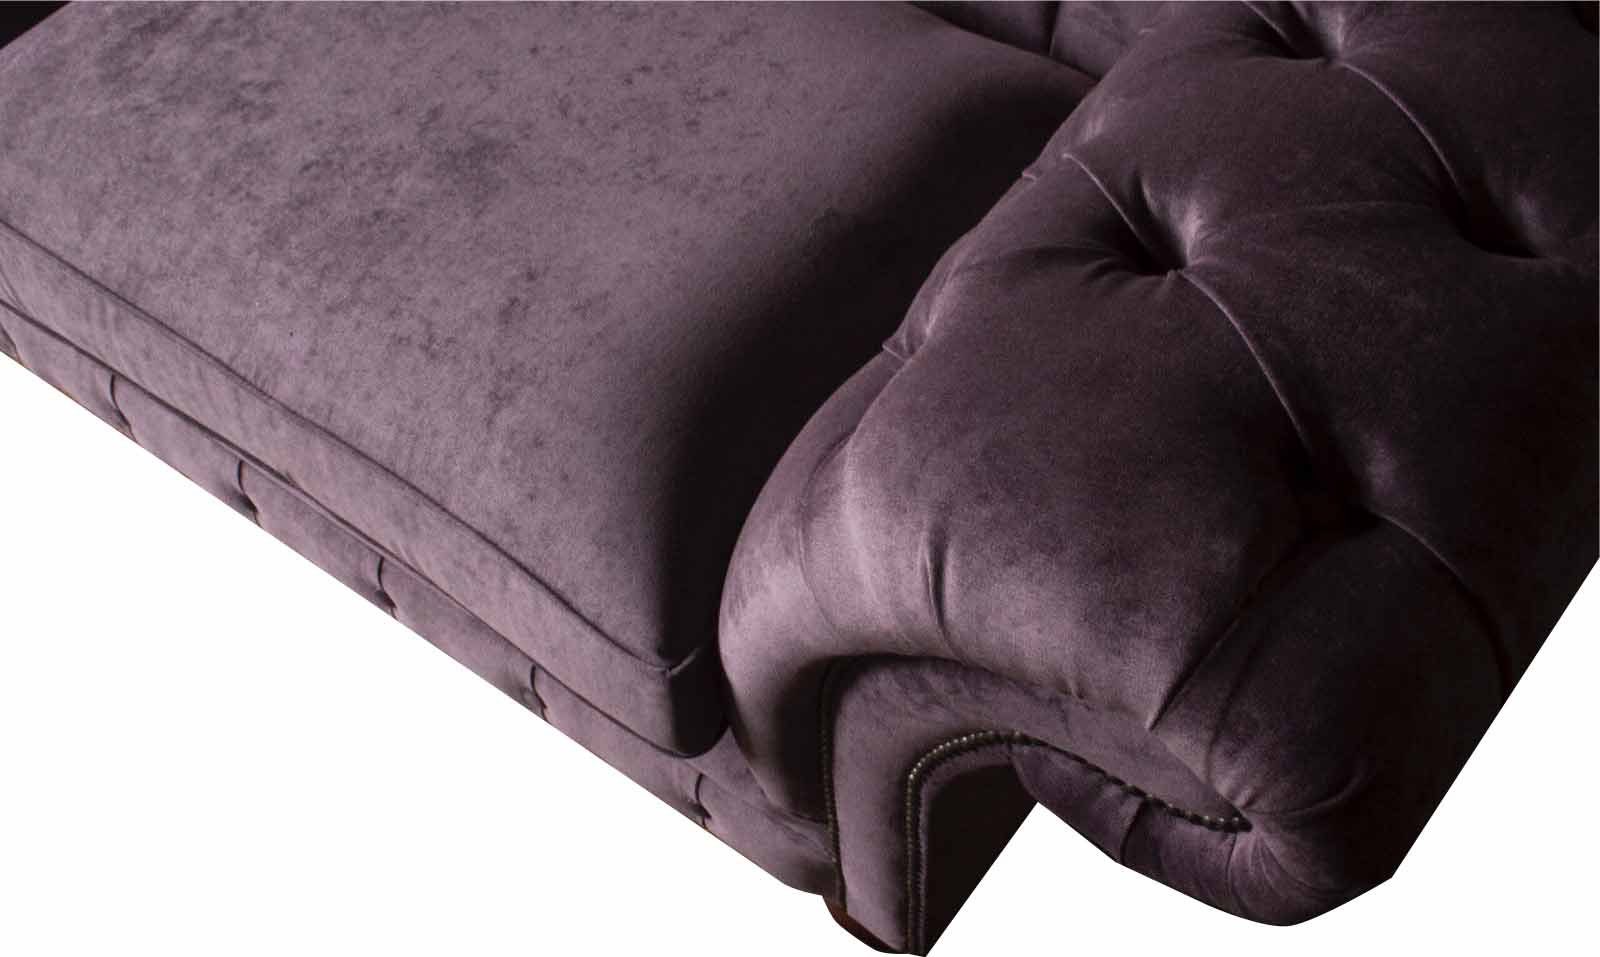 Textil Chesterfield-Sofa, Klassisch Design Sofa Dreisitzer Wohnzimmer Chesterfield JVmoebel